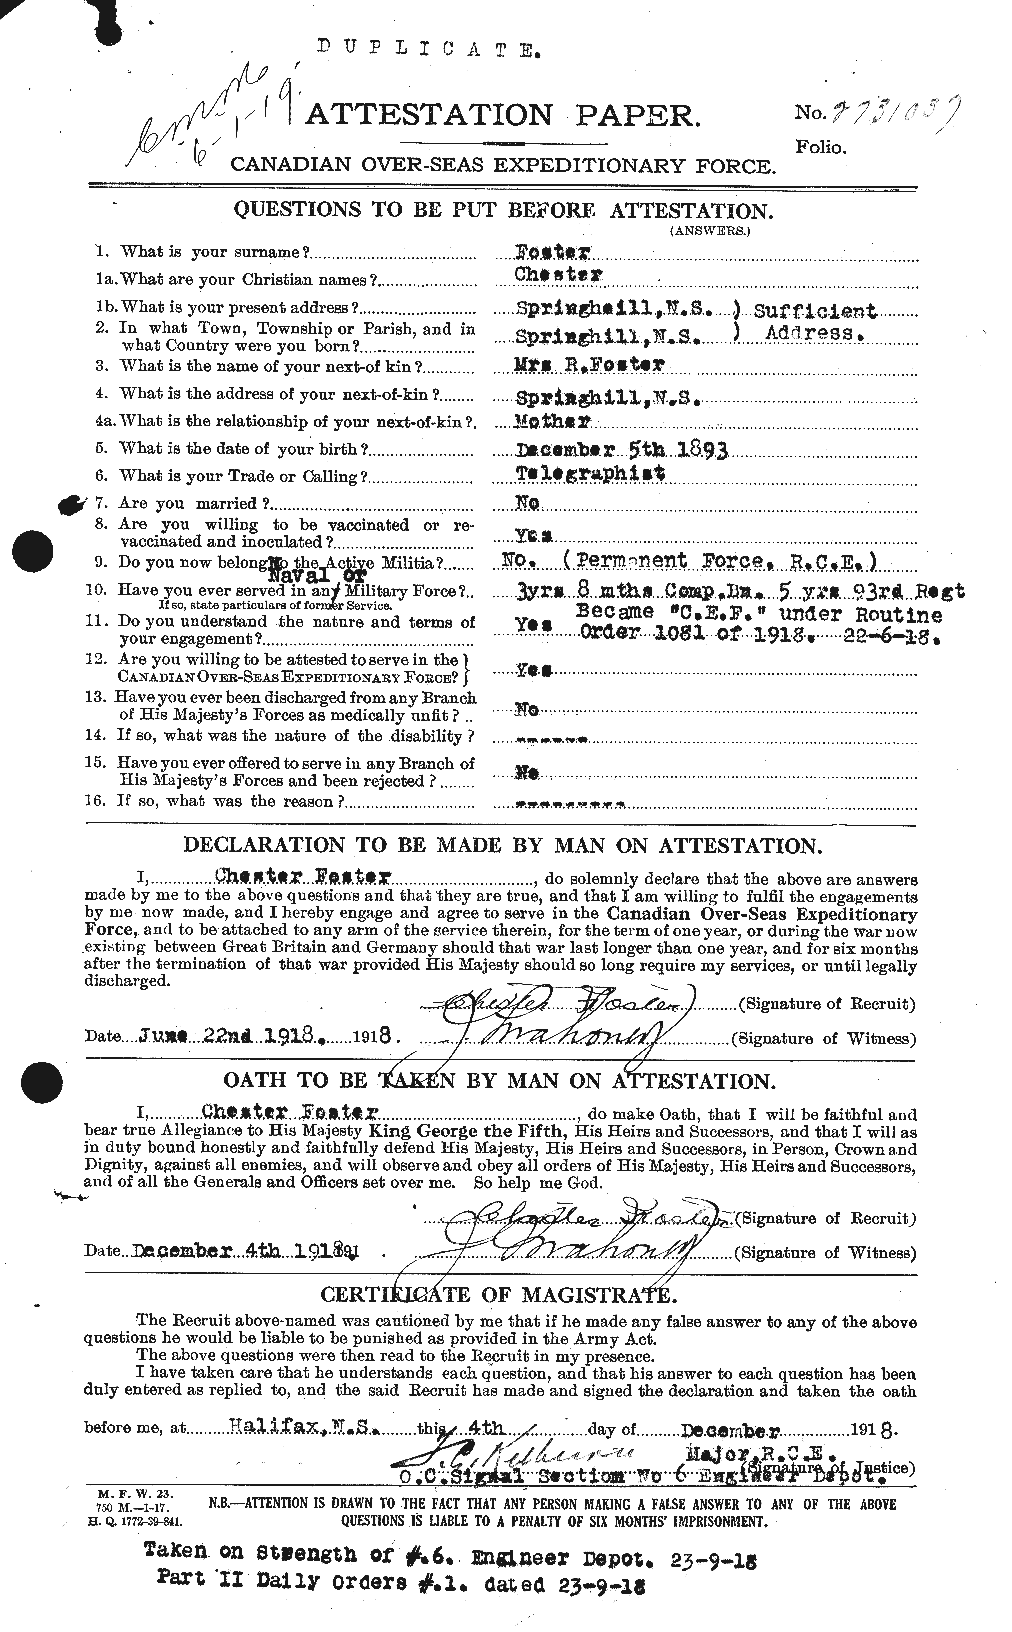 Dossiers du Personnel de la Première Guerre mondiale - CEC 330528a